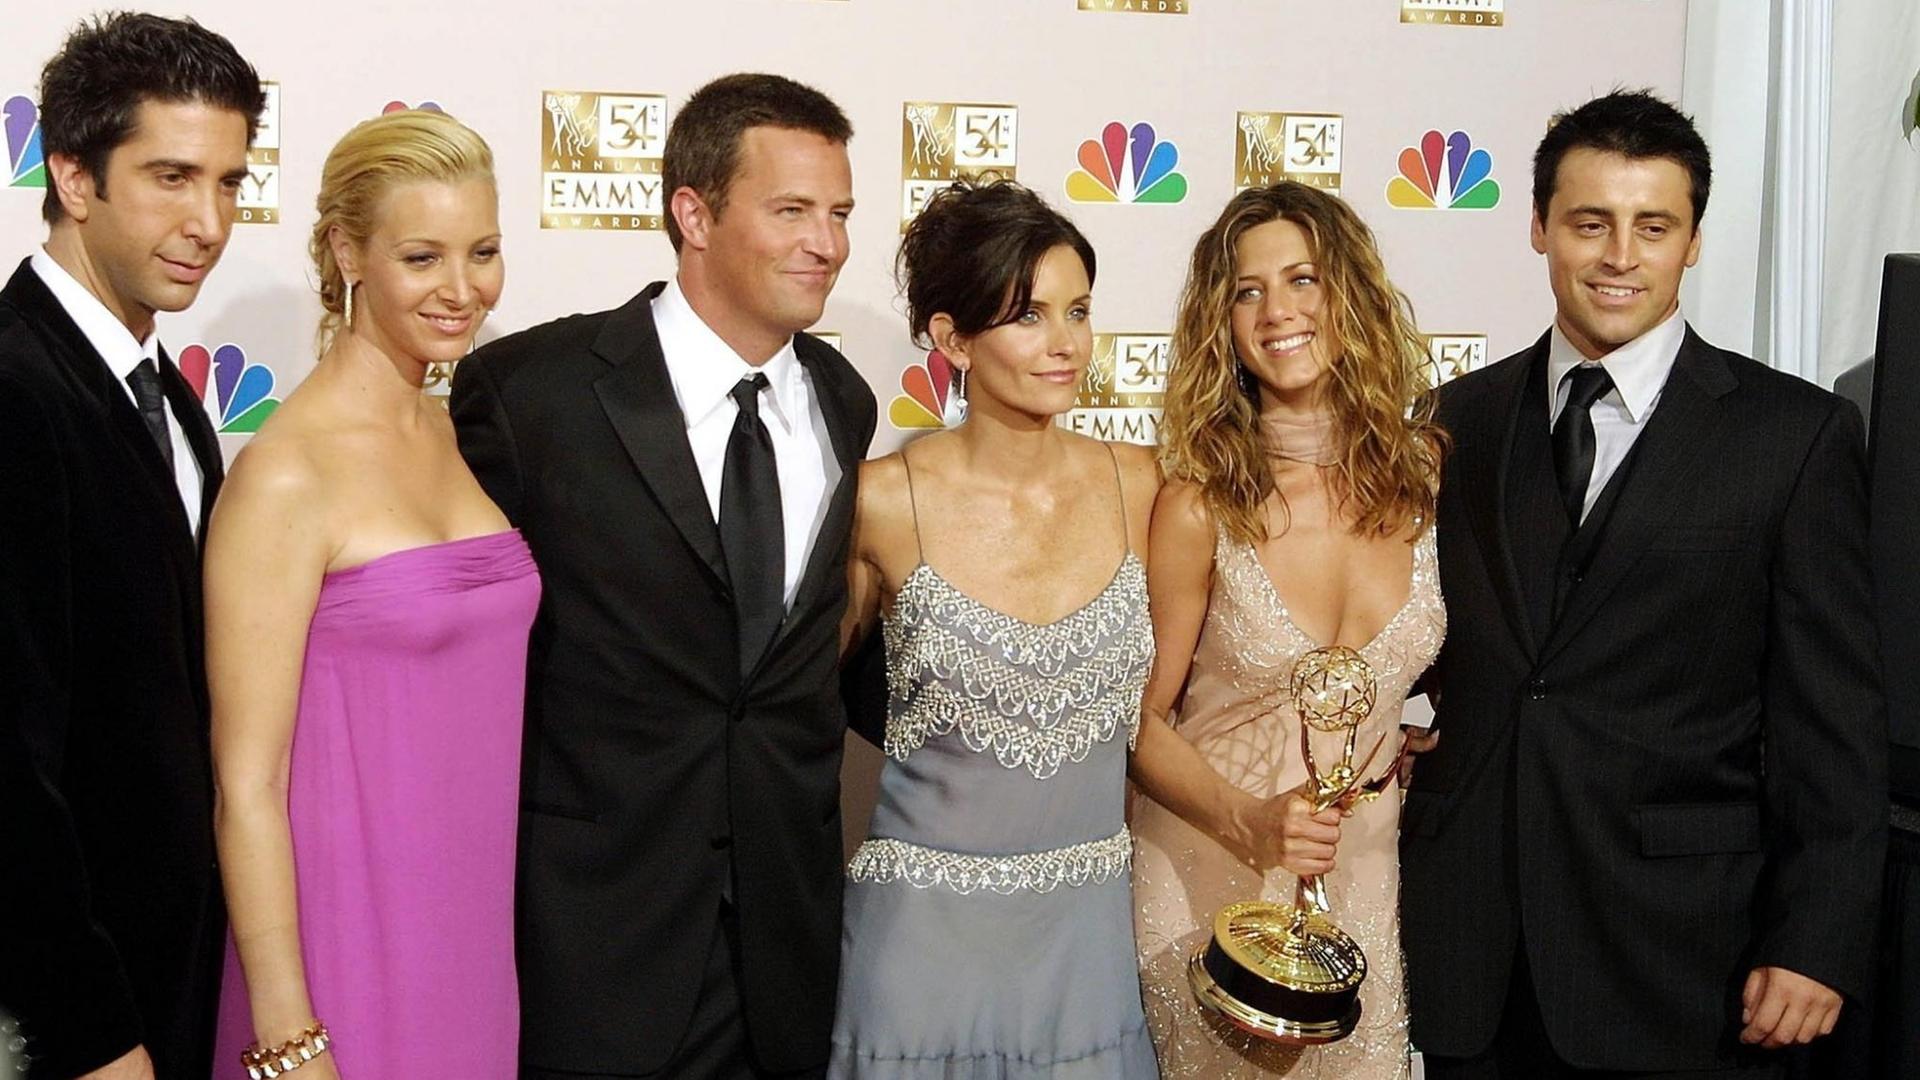 Die amerikanischen Schauspieler David Schwimmer, Lisa Kudrow, Mathew Perry, Courtney Cox Arquette, Jennifer Aniston und Matt LeBlanc (l-r), die Darsteller der Comedy-Serie "Friends"